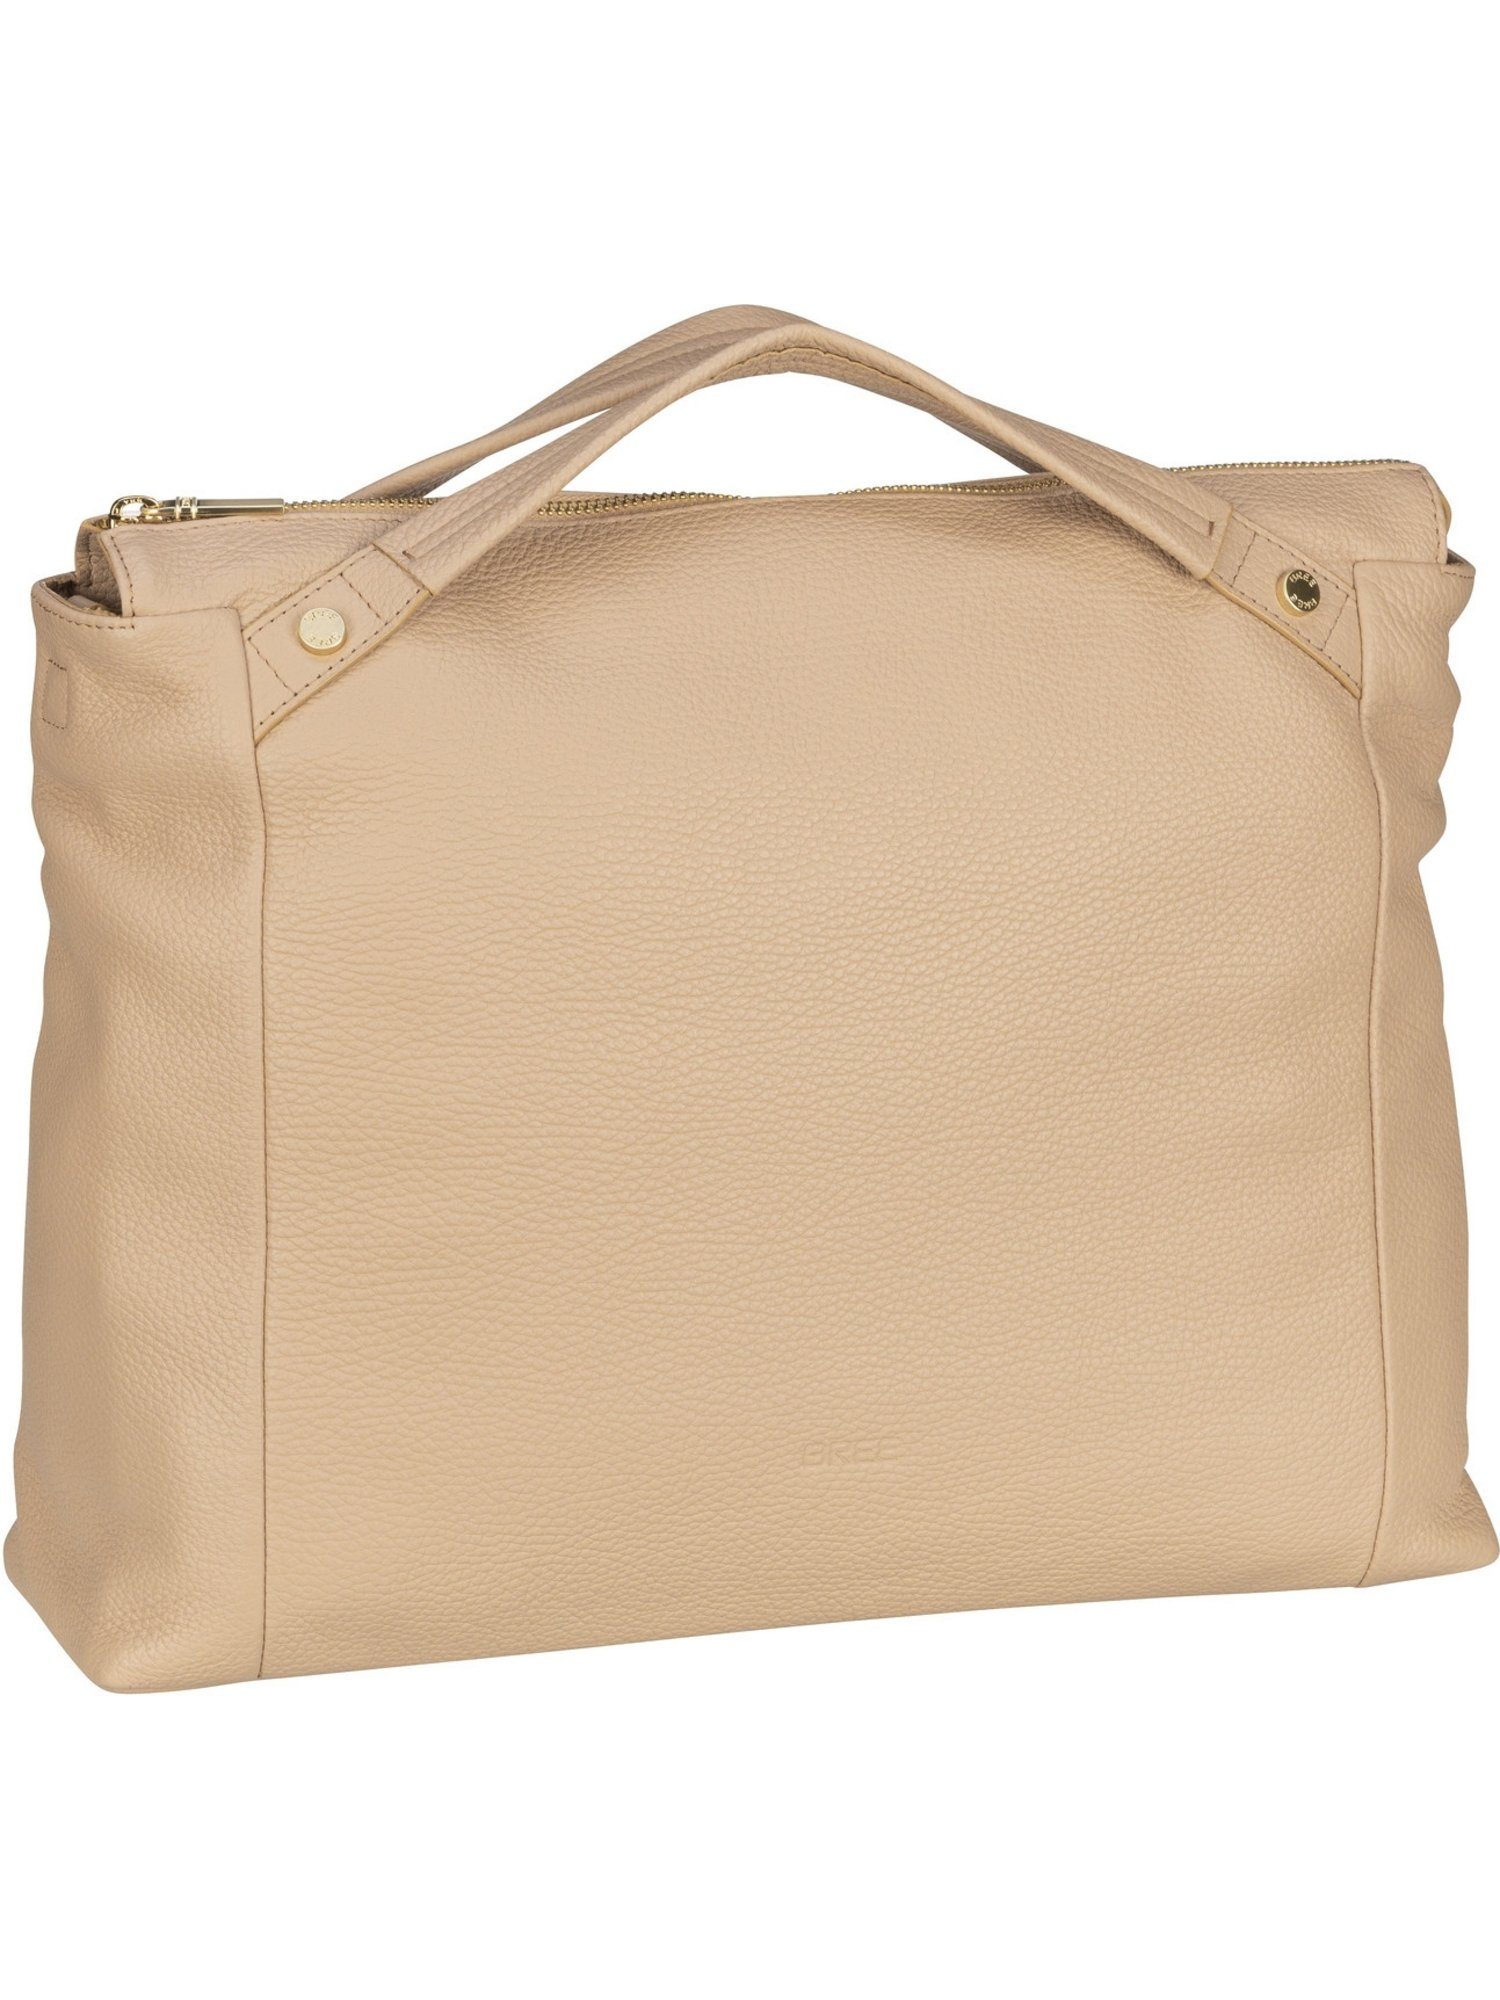 BREE Handtasche Tana 5, Shopper online kaufen | OTTO